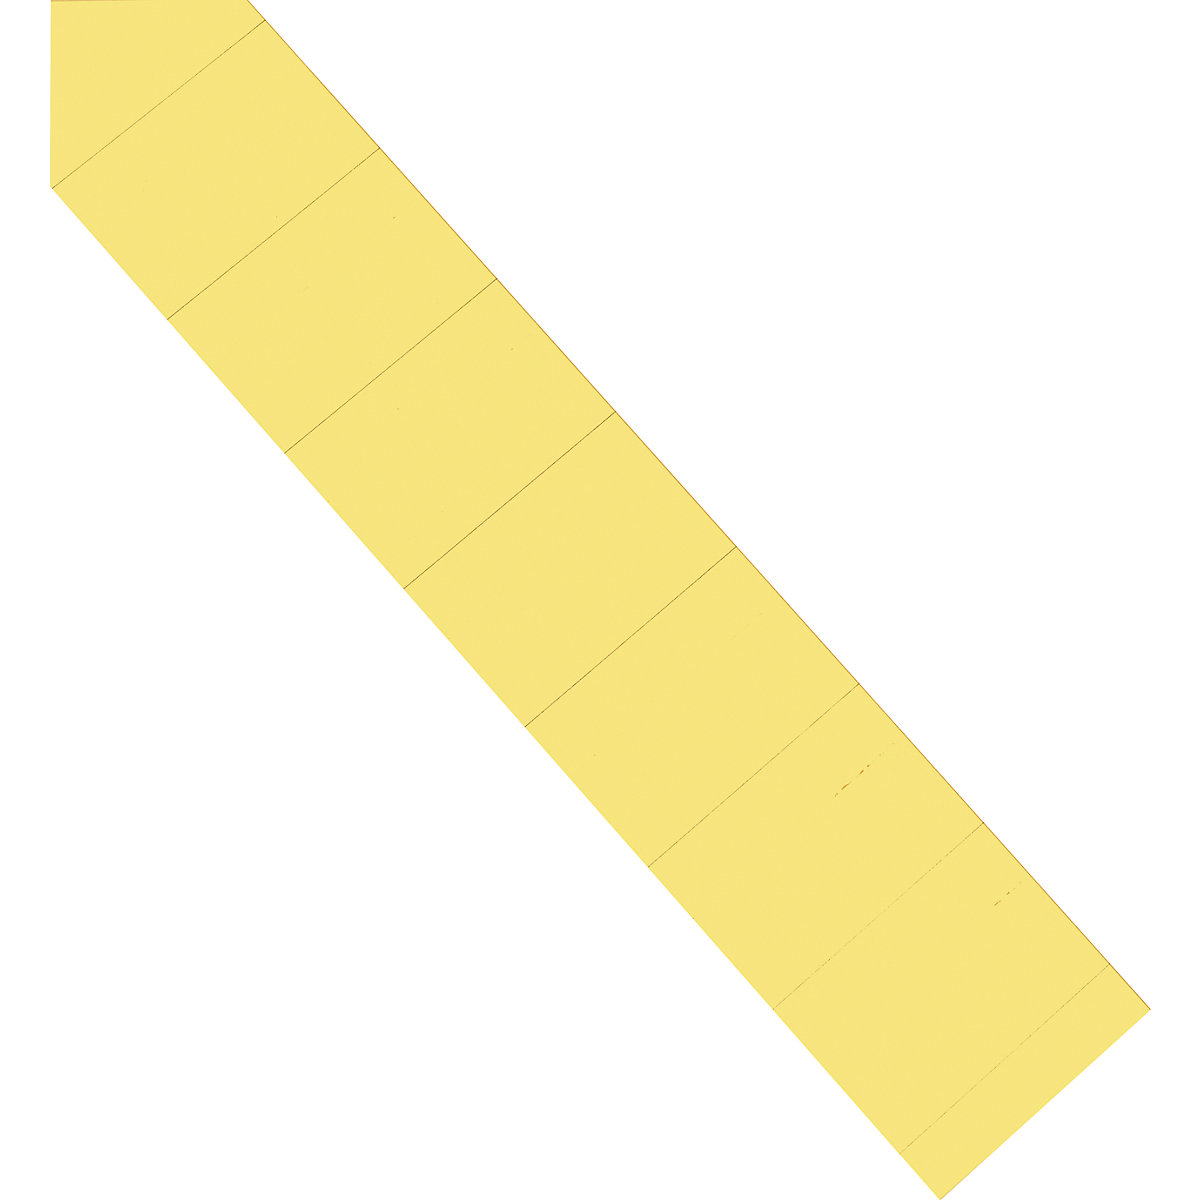 Einsteckkarten magnetoplan, 70 mm, VE 630 Stk, gelb-6